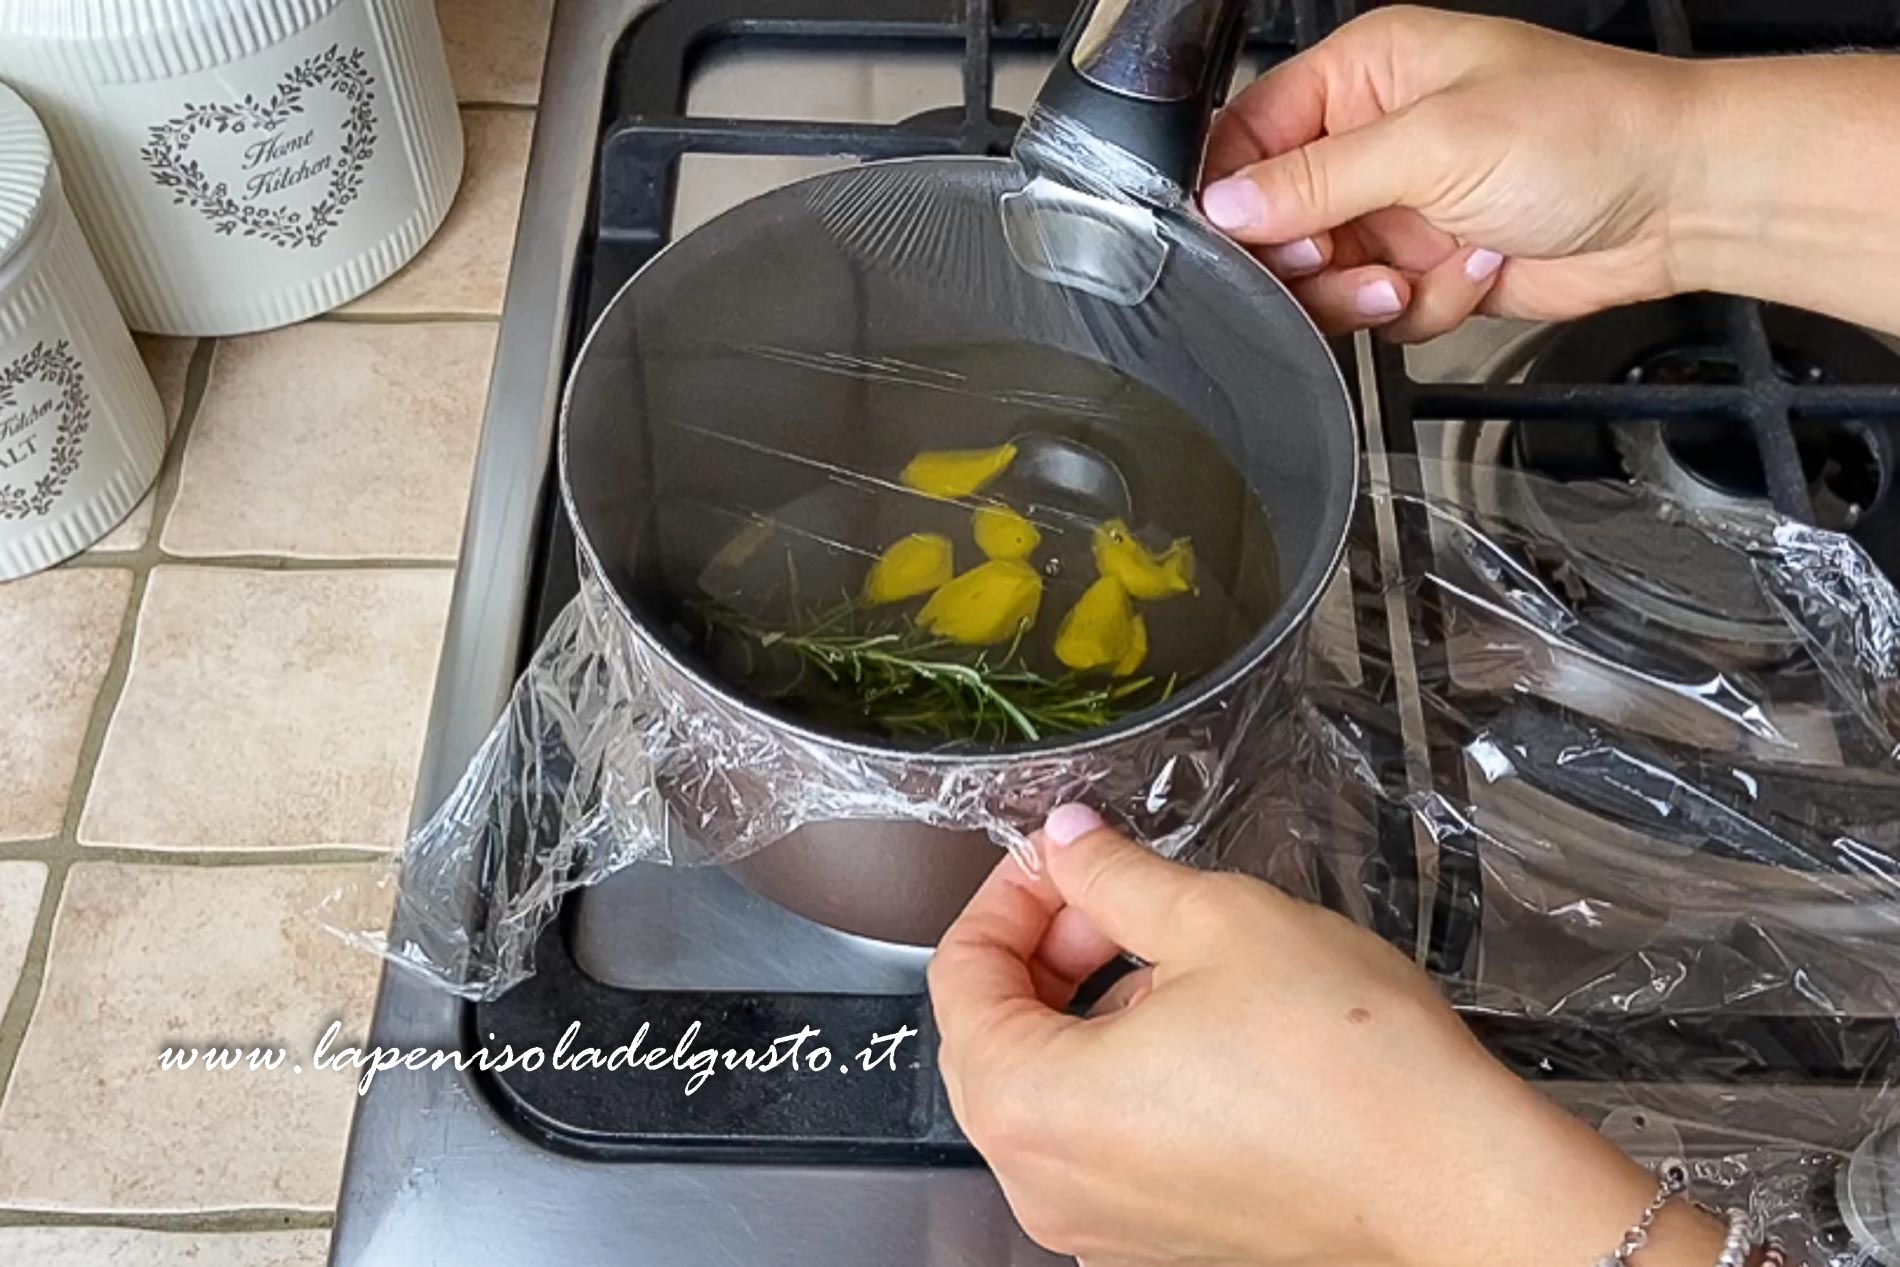 scaldo l olio sui fornelli per preparare ricetta dell olio aromatizzato piccante all aglio 